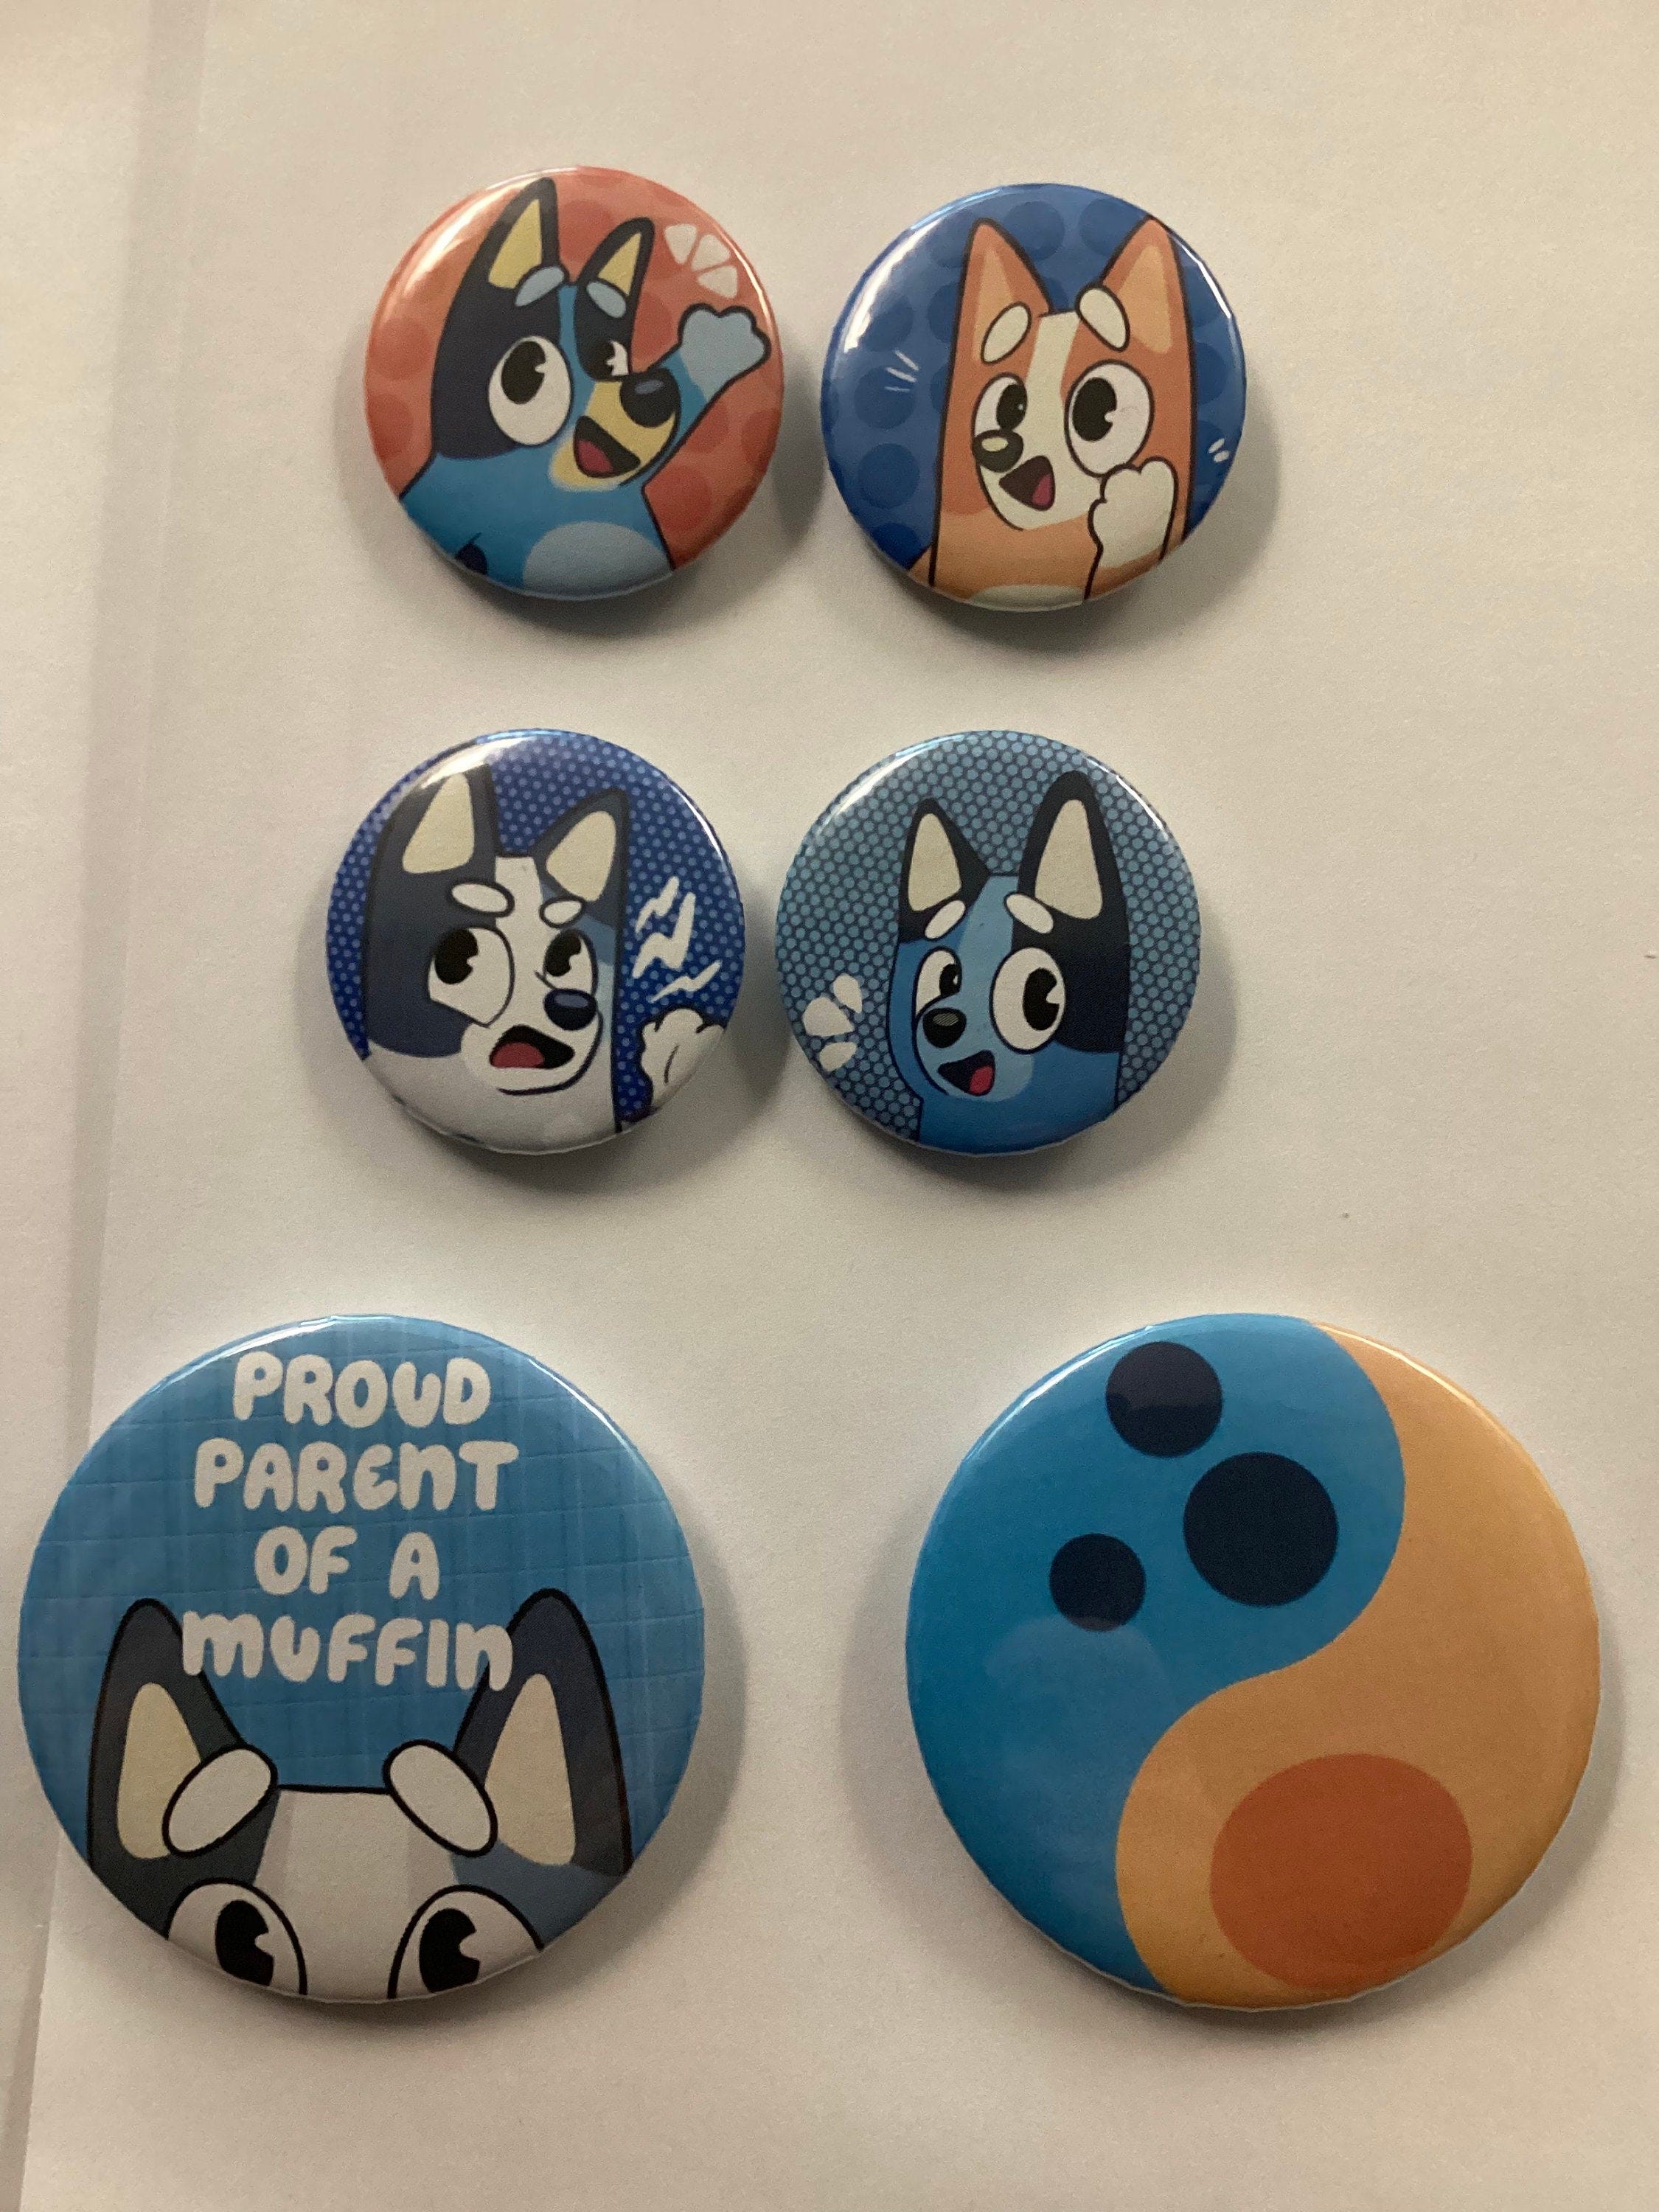 Bluey Bingo Muffin Socks heeler button pins puppy dog merch